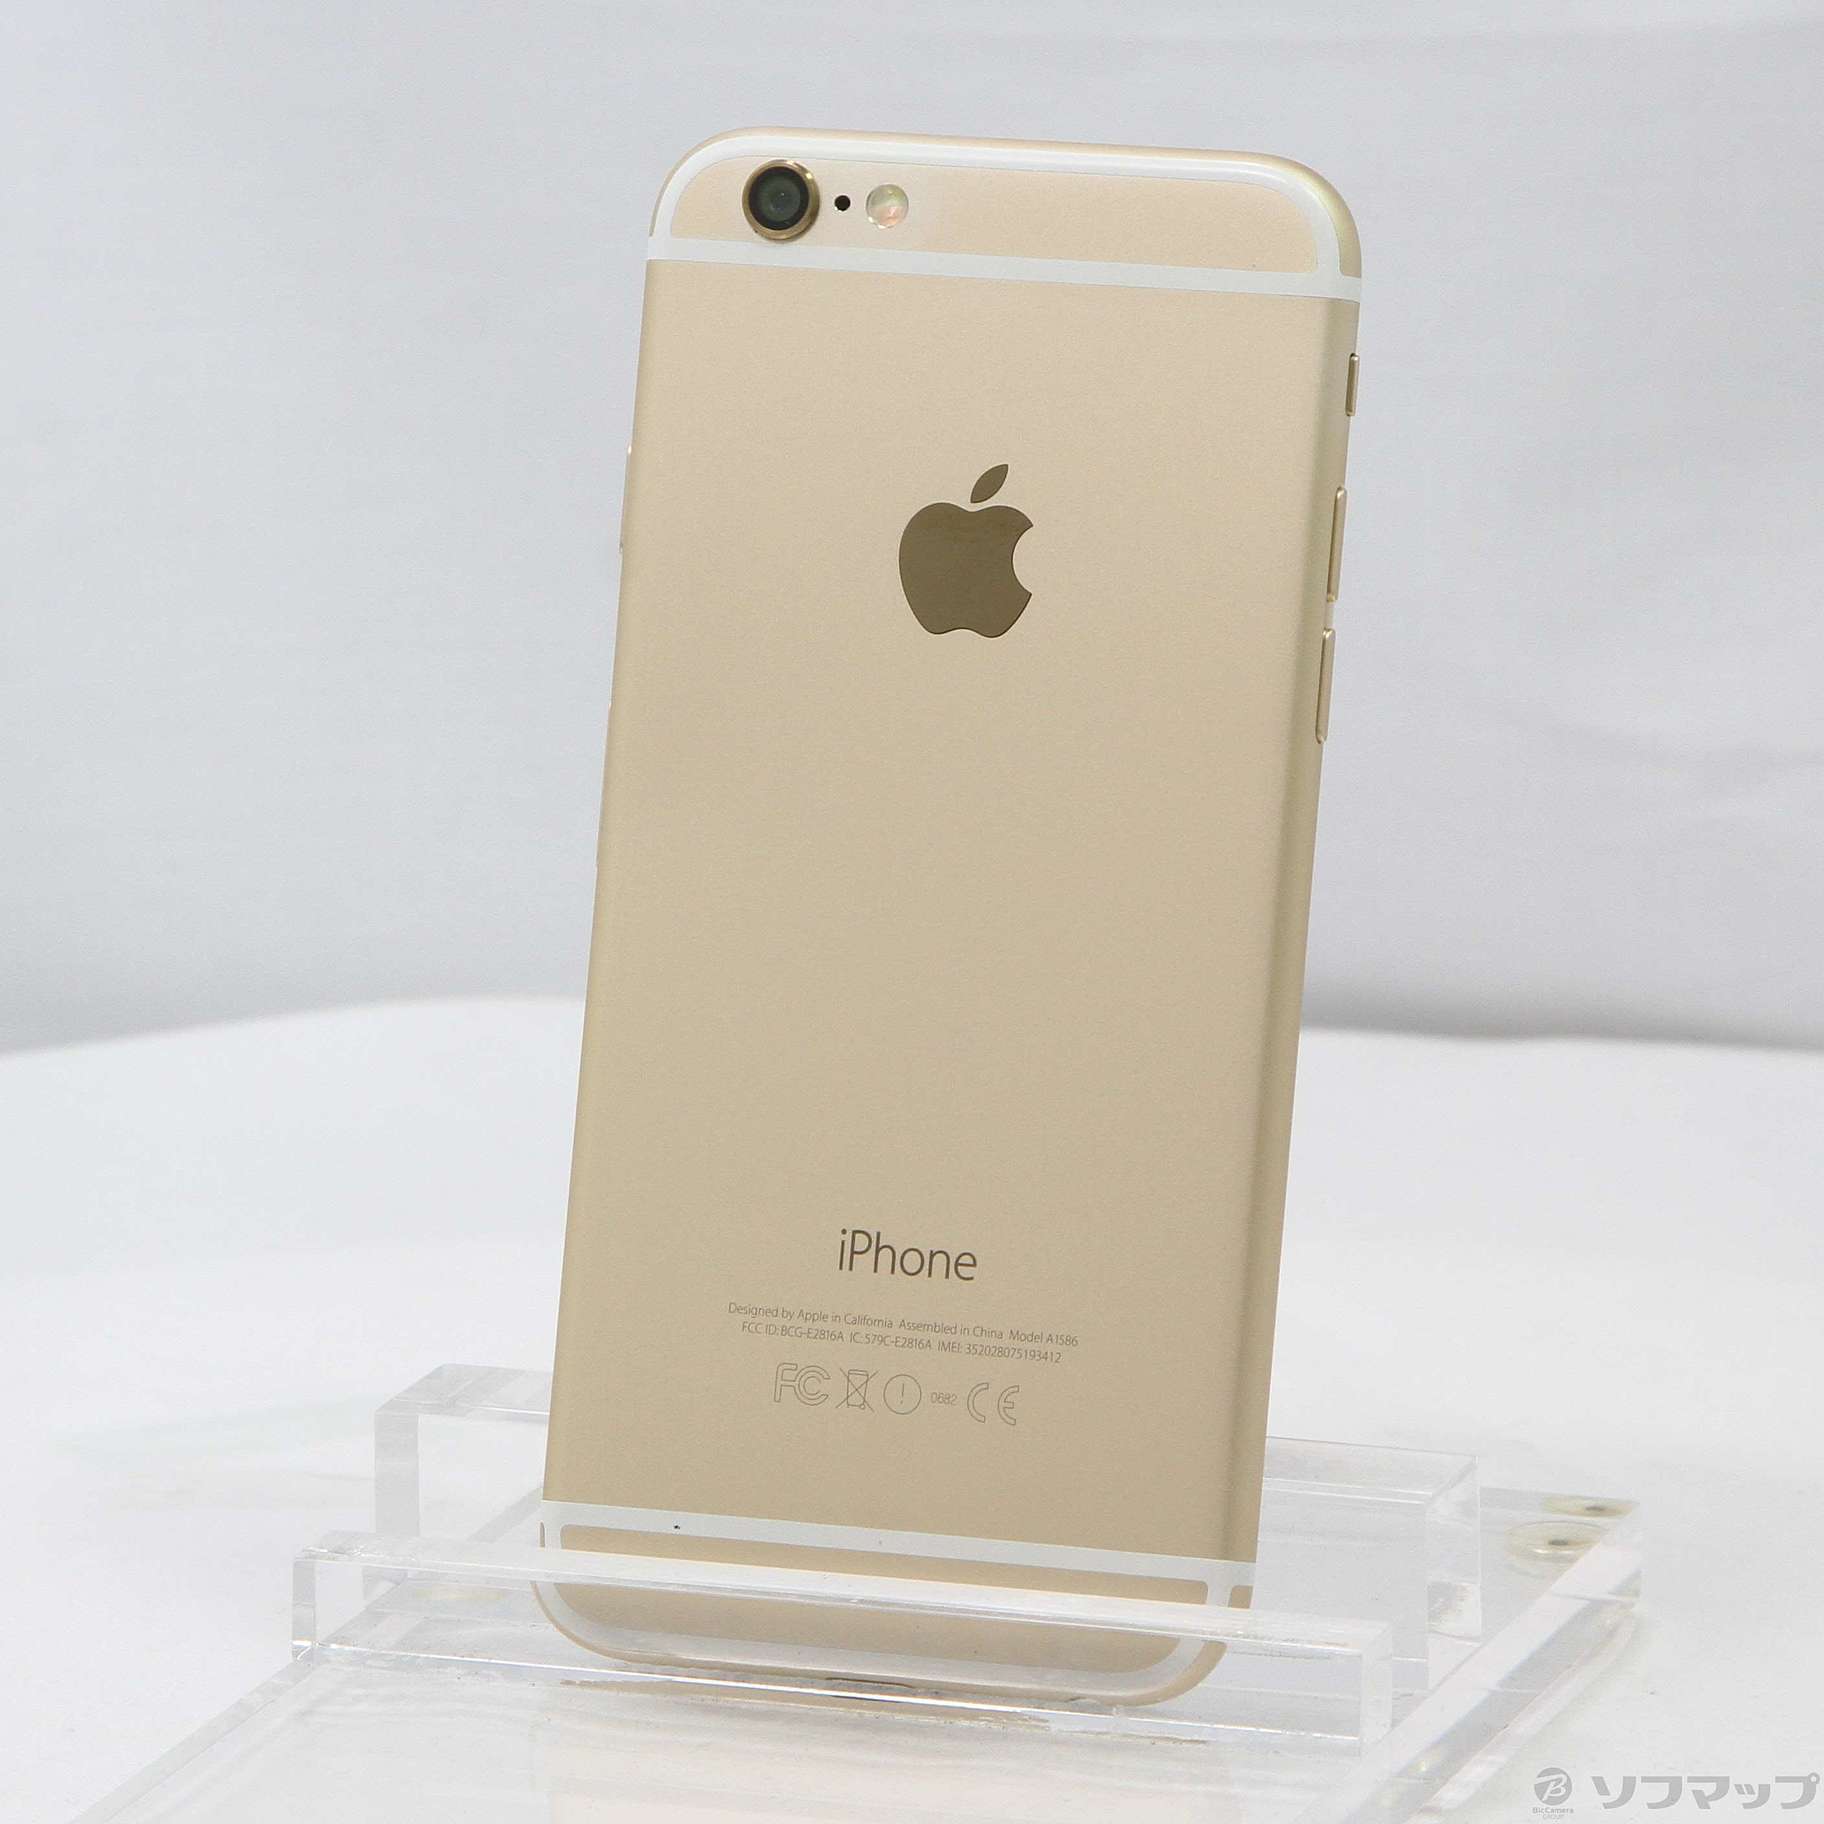 iPhone 6 au 16gb gold - スマートフォン本体